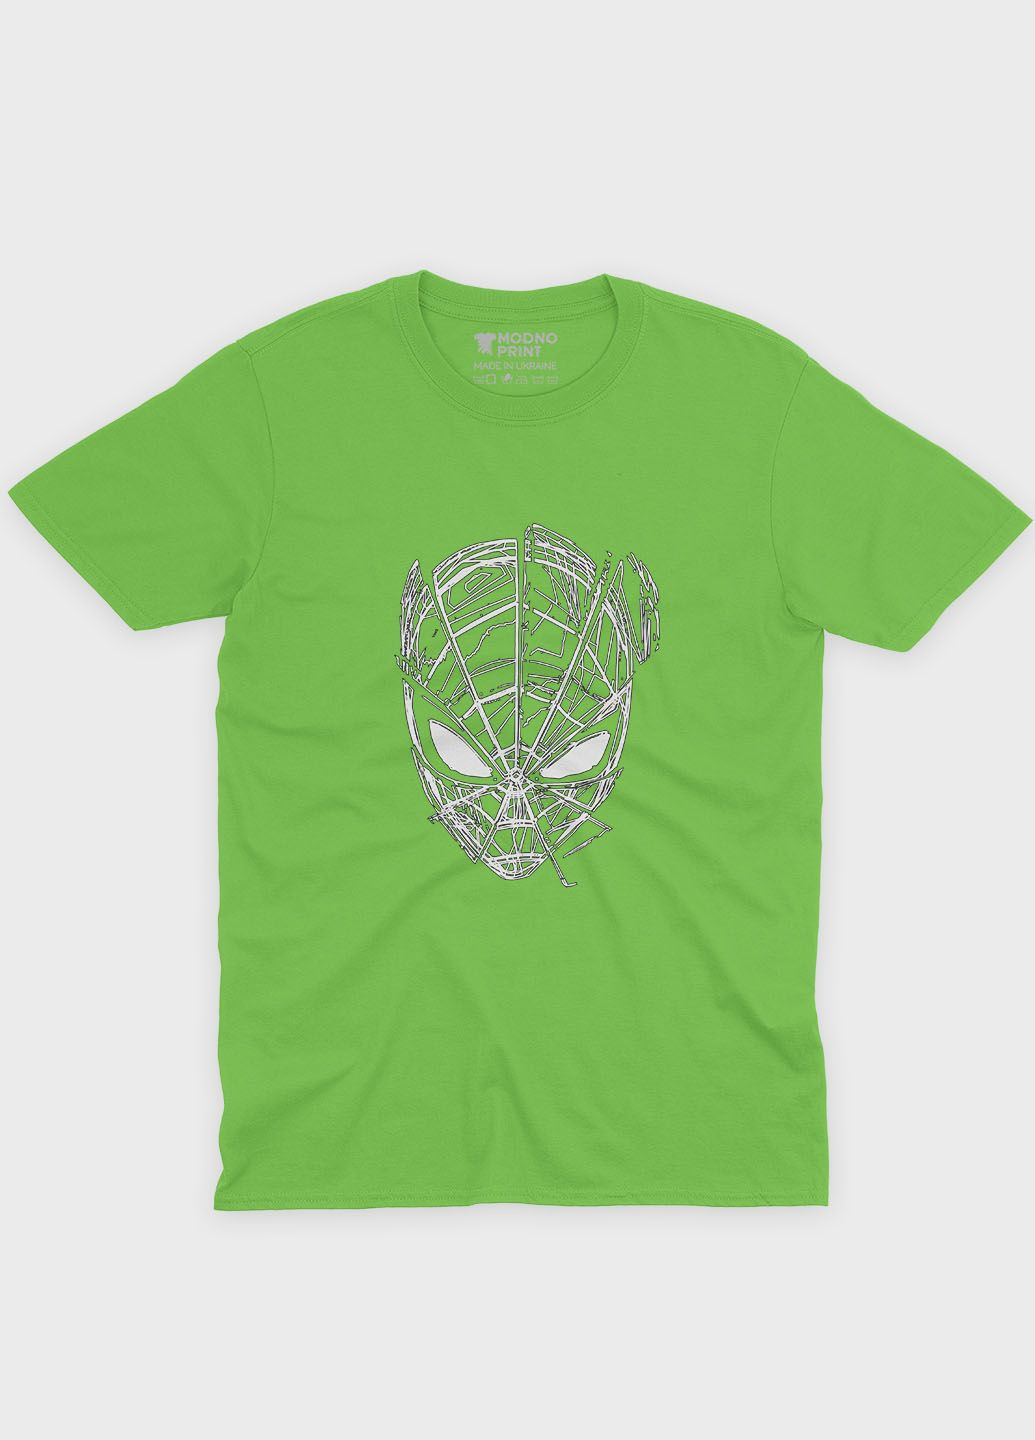 Салатова демісезонна футболка для хлопчика з принтом супергероя - людина-павук (ts001-1-kiw-006-014-070-b) Modno